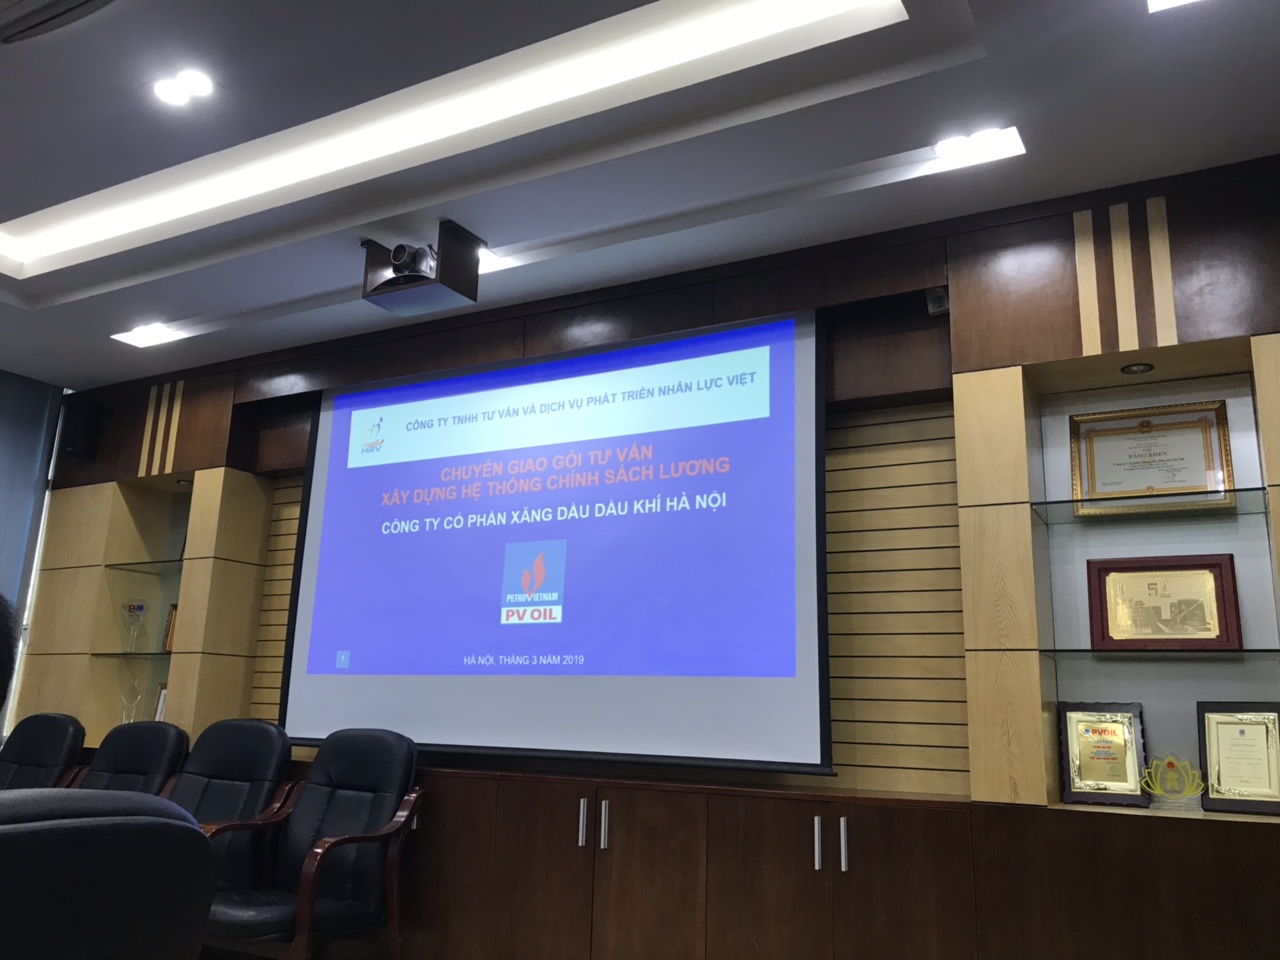 Chuyển giao gói tư vấn xây dựng hệ thống chính sách lương cho PV OIL Hà Nội